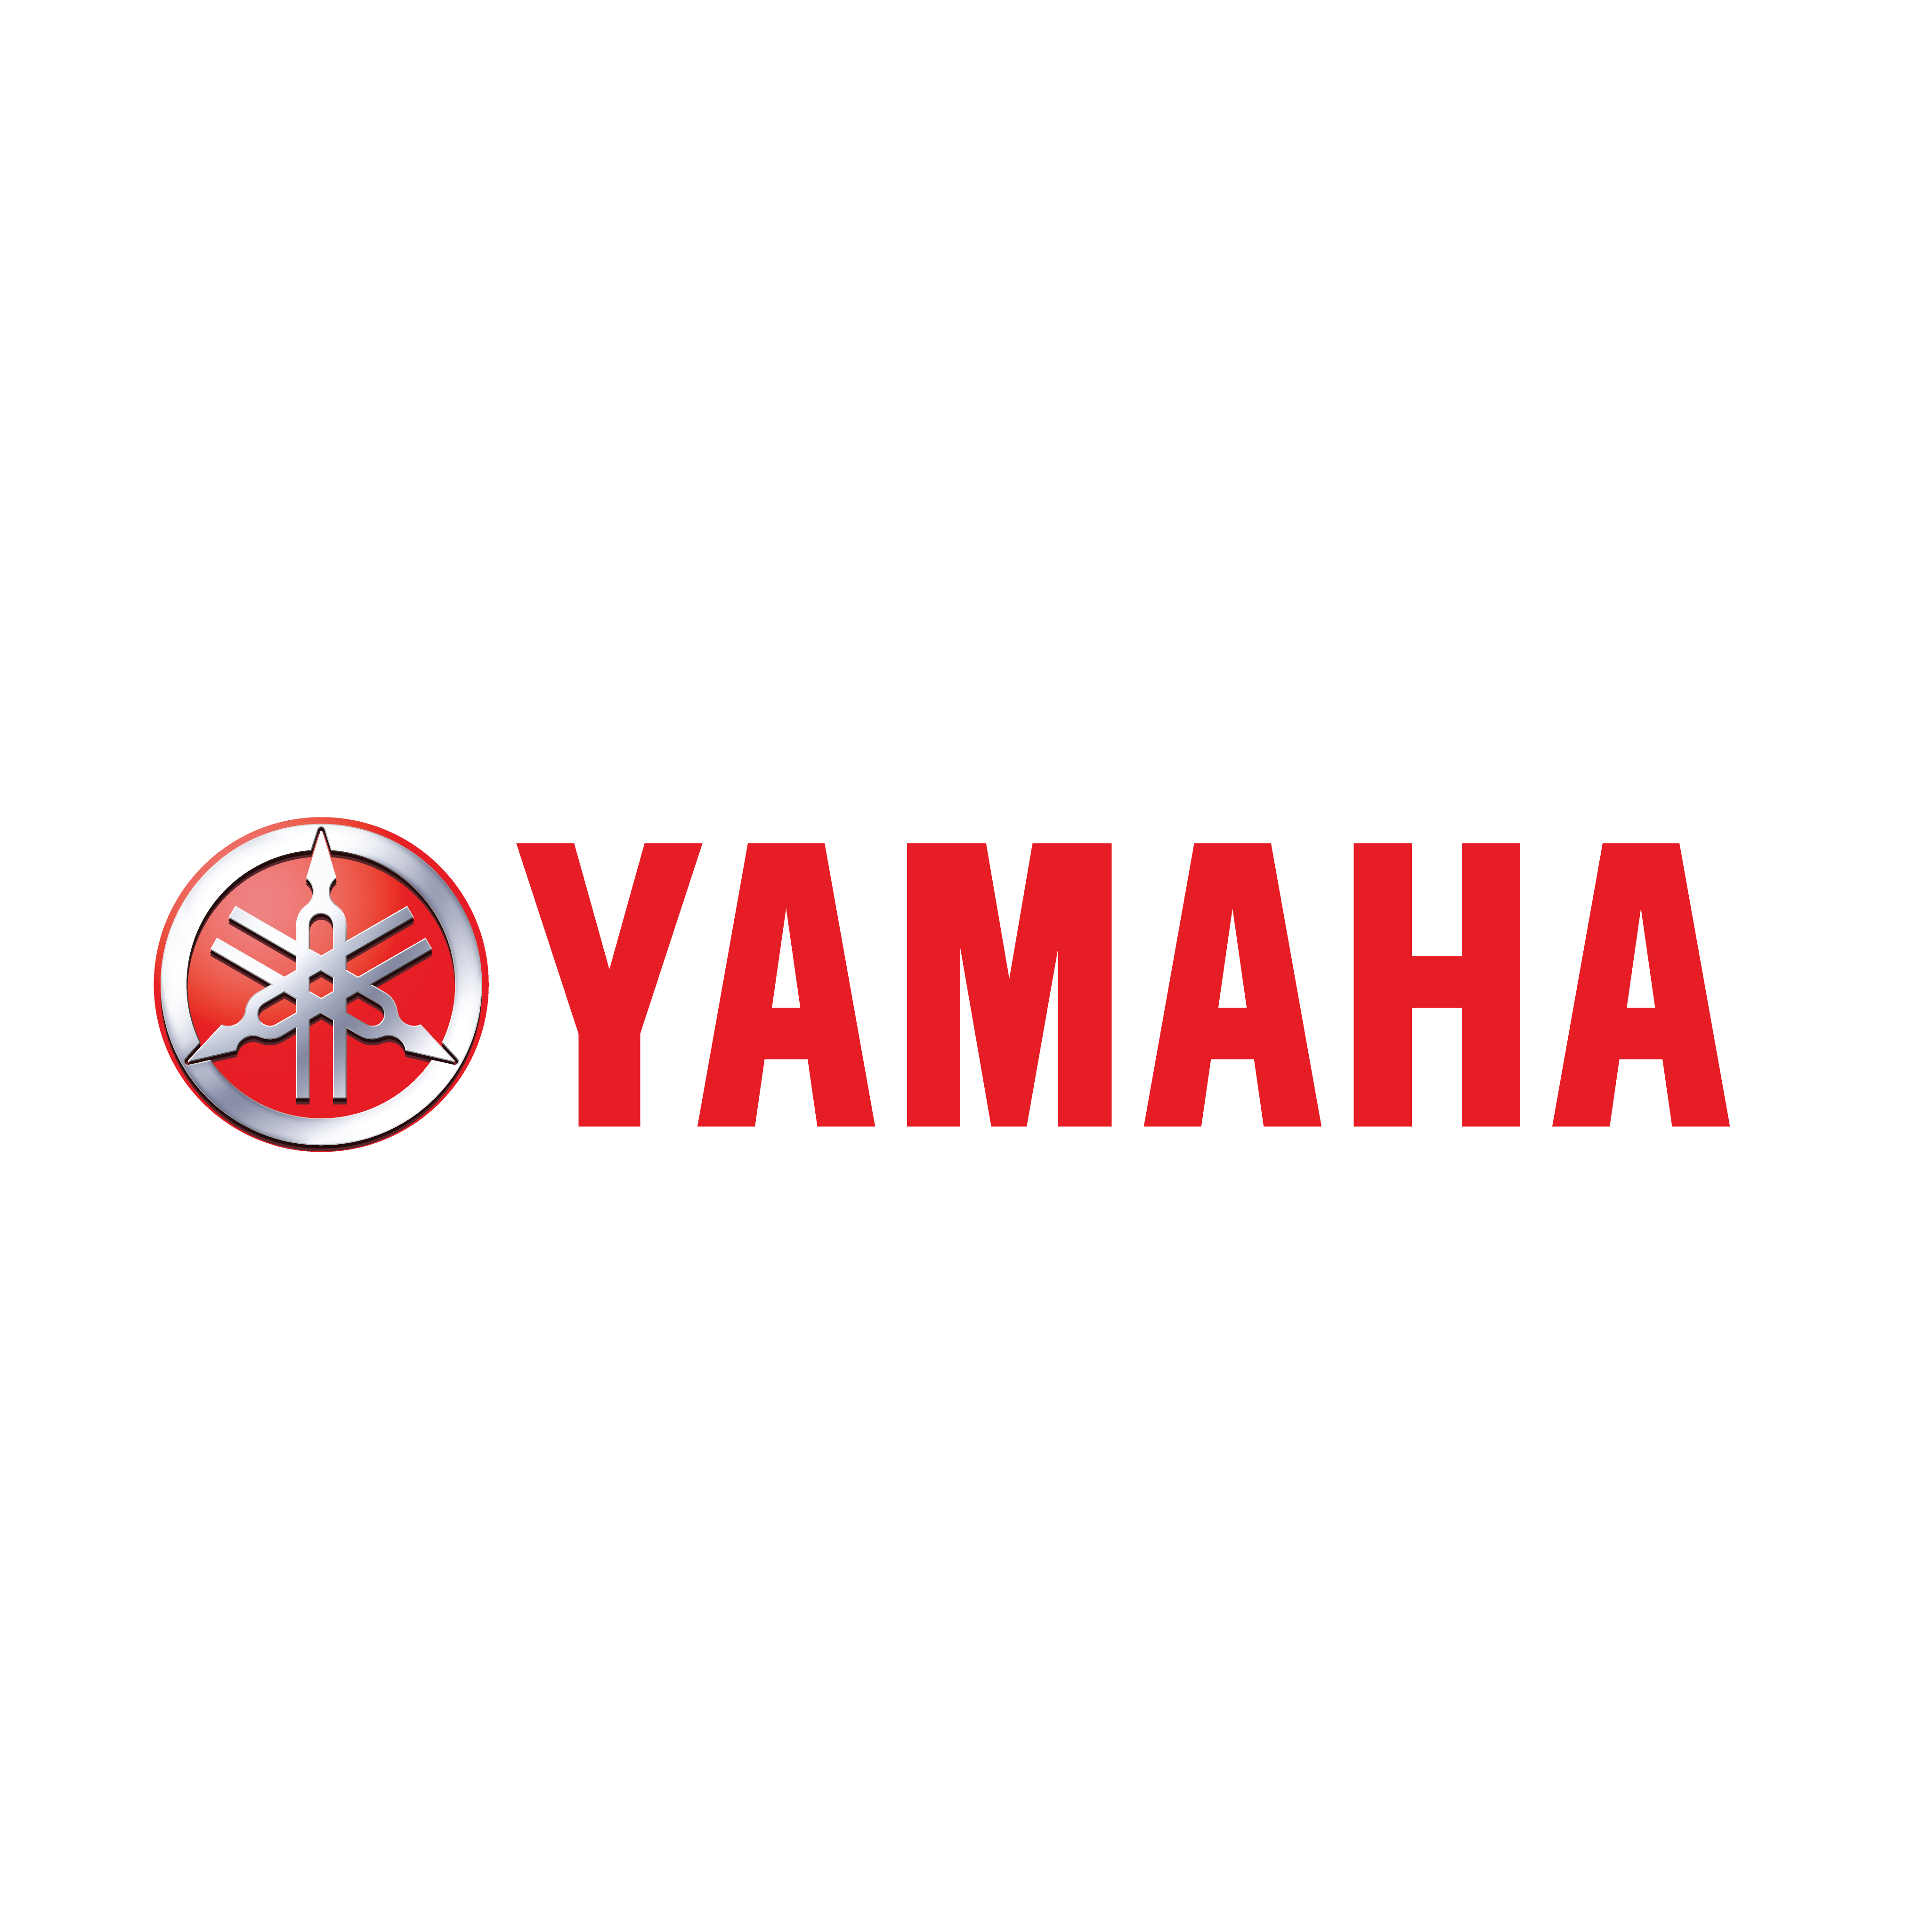 yamaha logo 0 - Yamaha Motor Logo